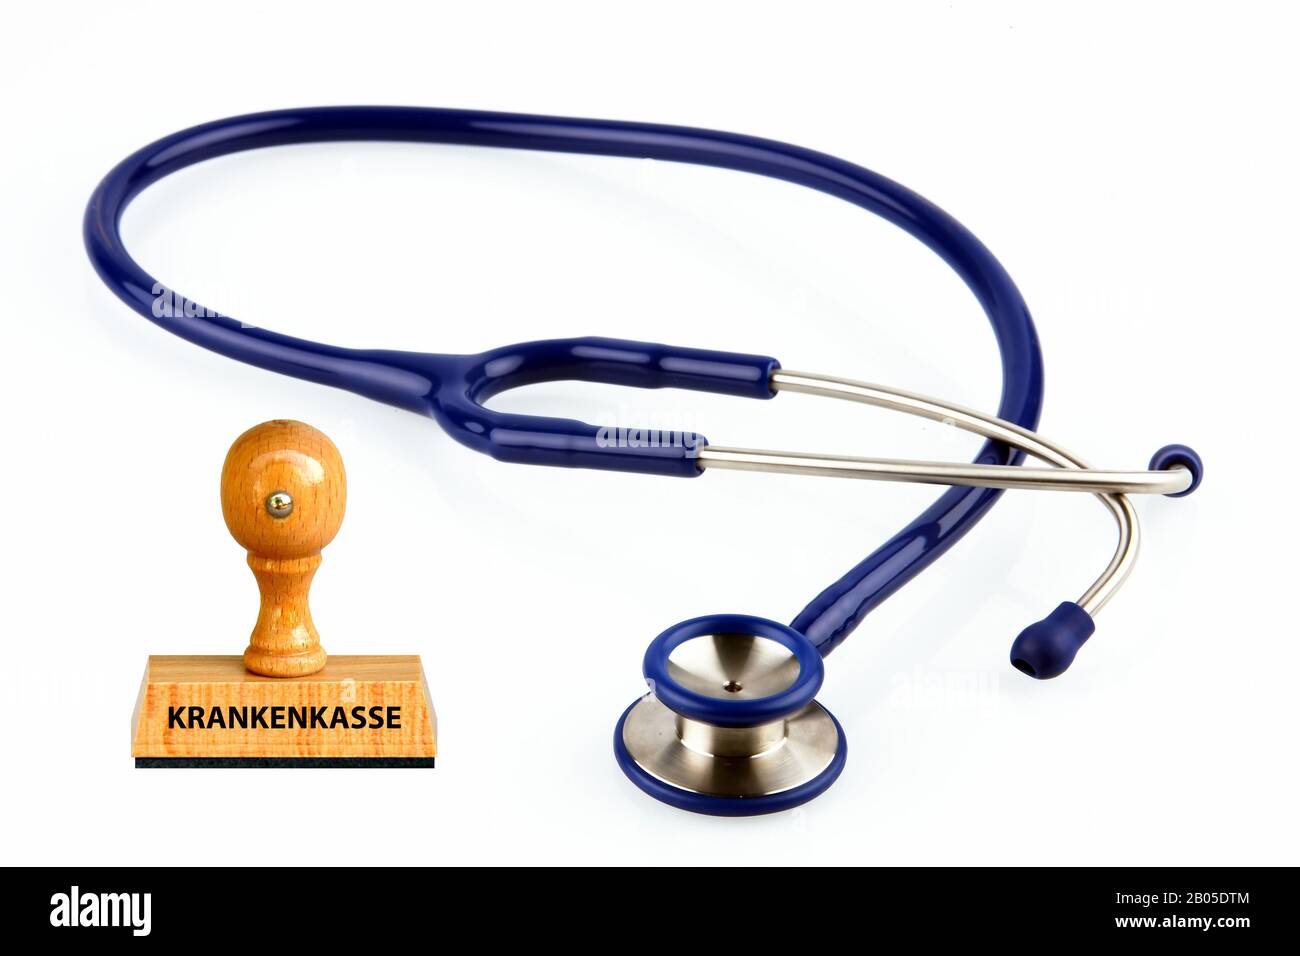 stamp lettering Krankenkasse, medical insurances, stethoscope, Germany Stock Photo